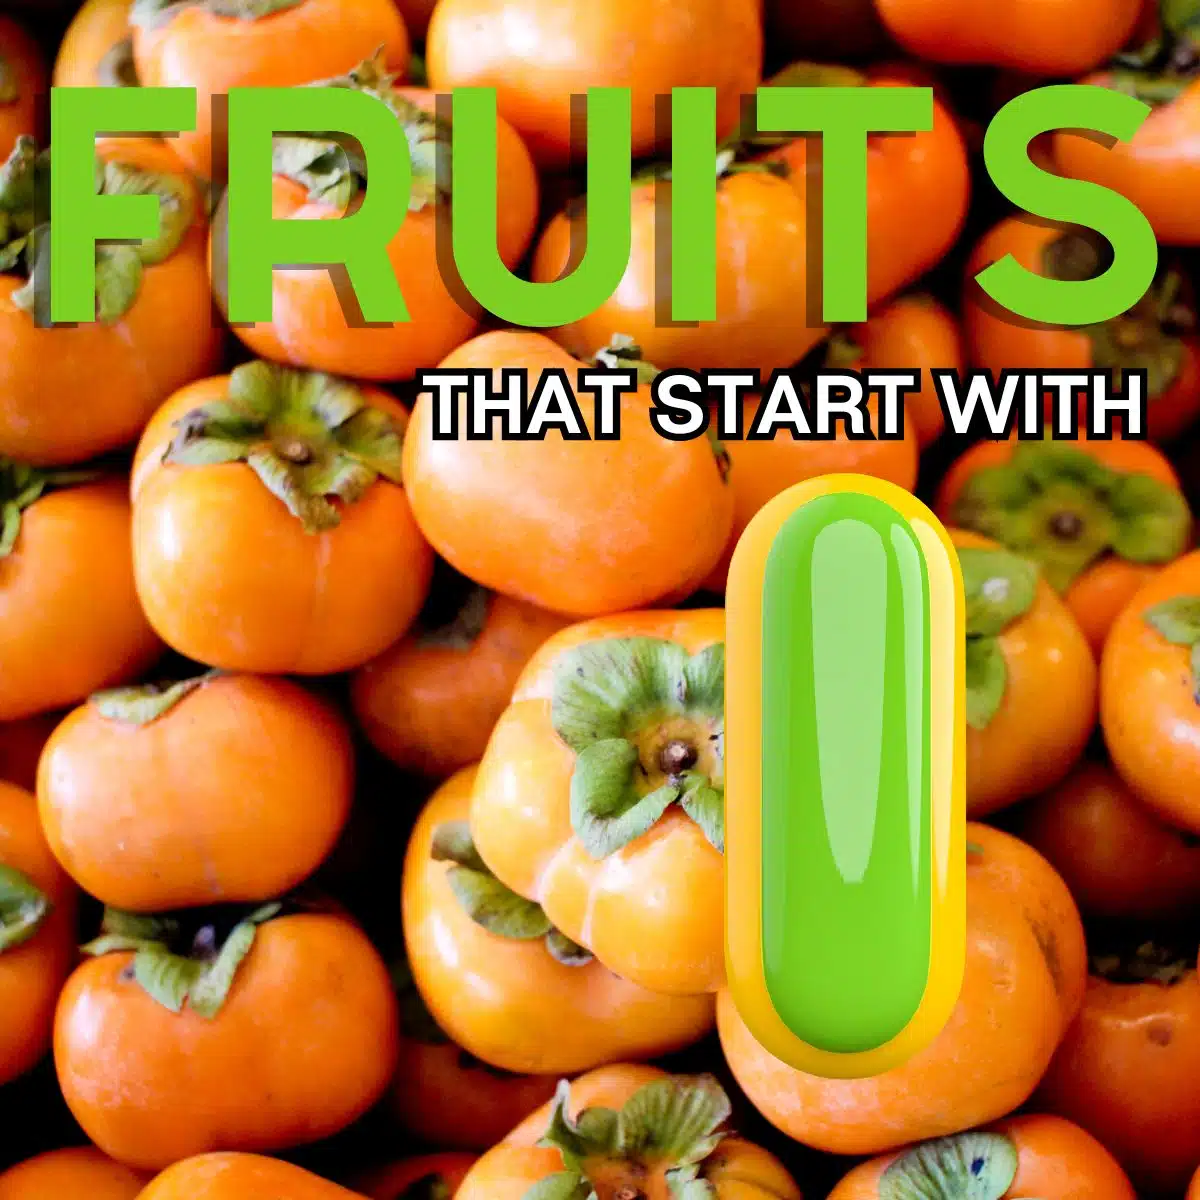 Квадратно изображение за плодове, които започват с буквата I, показващо индийска райска ябълка.